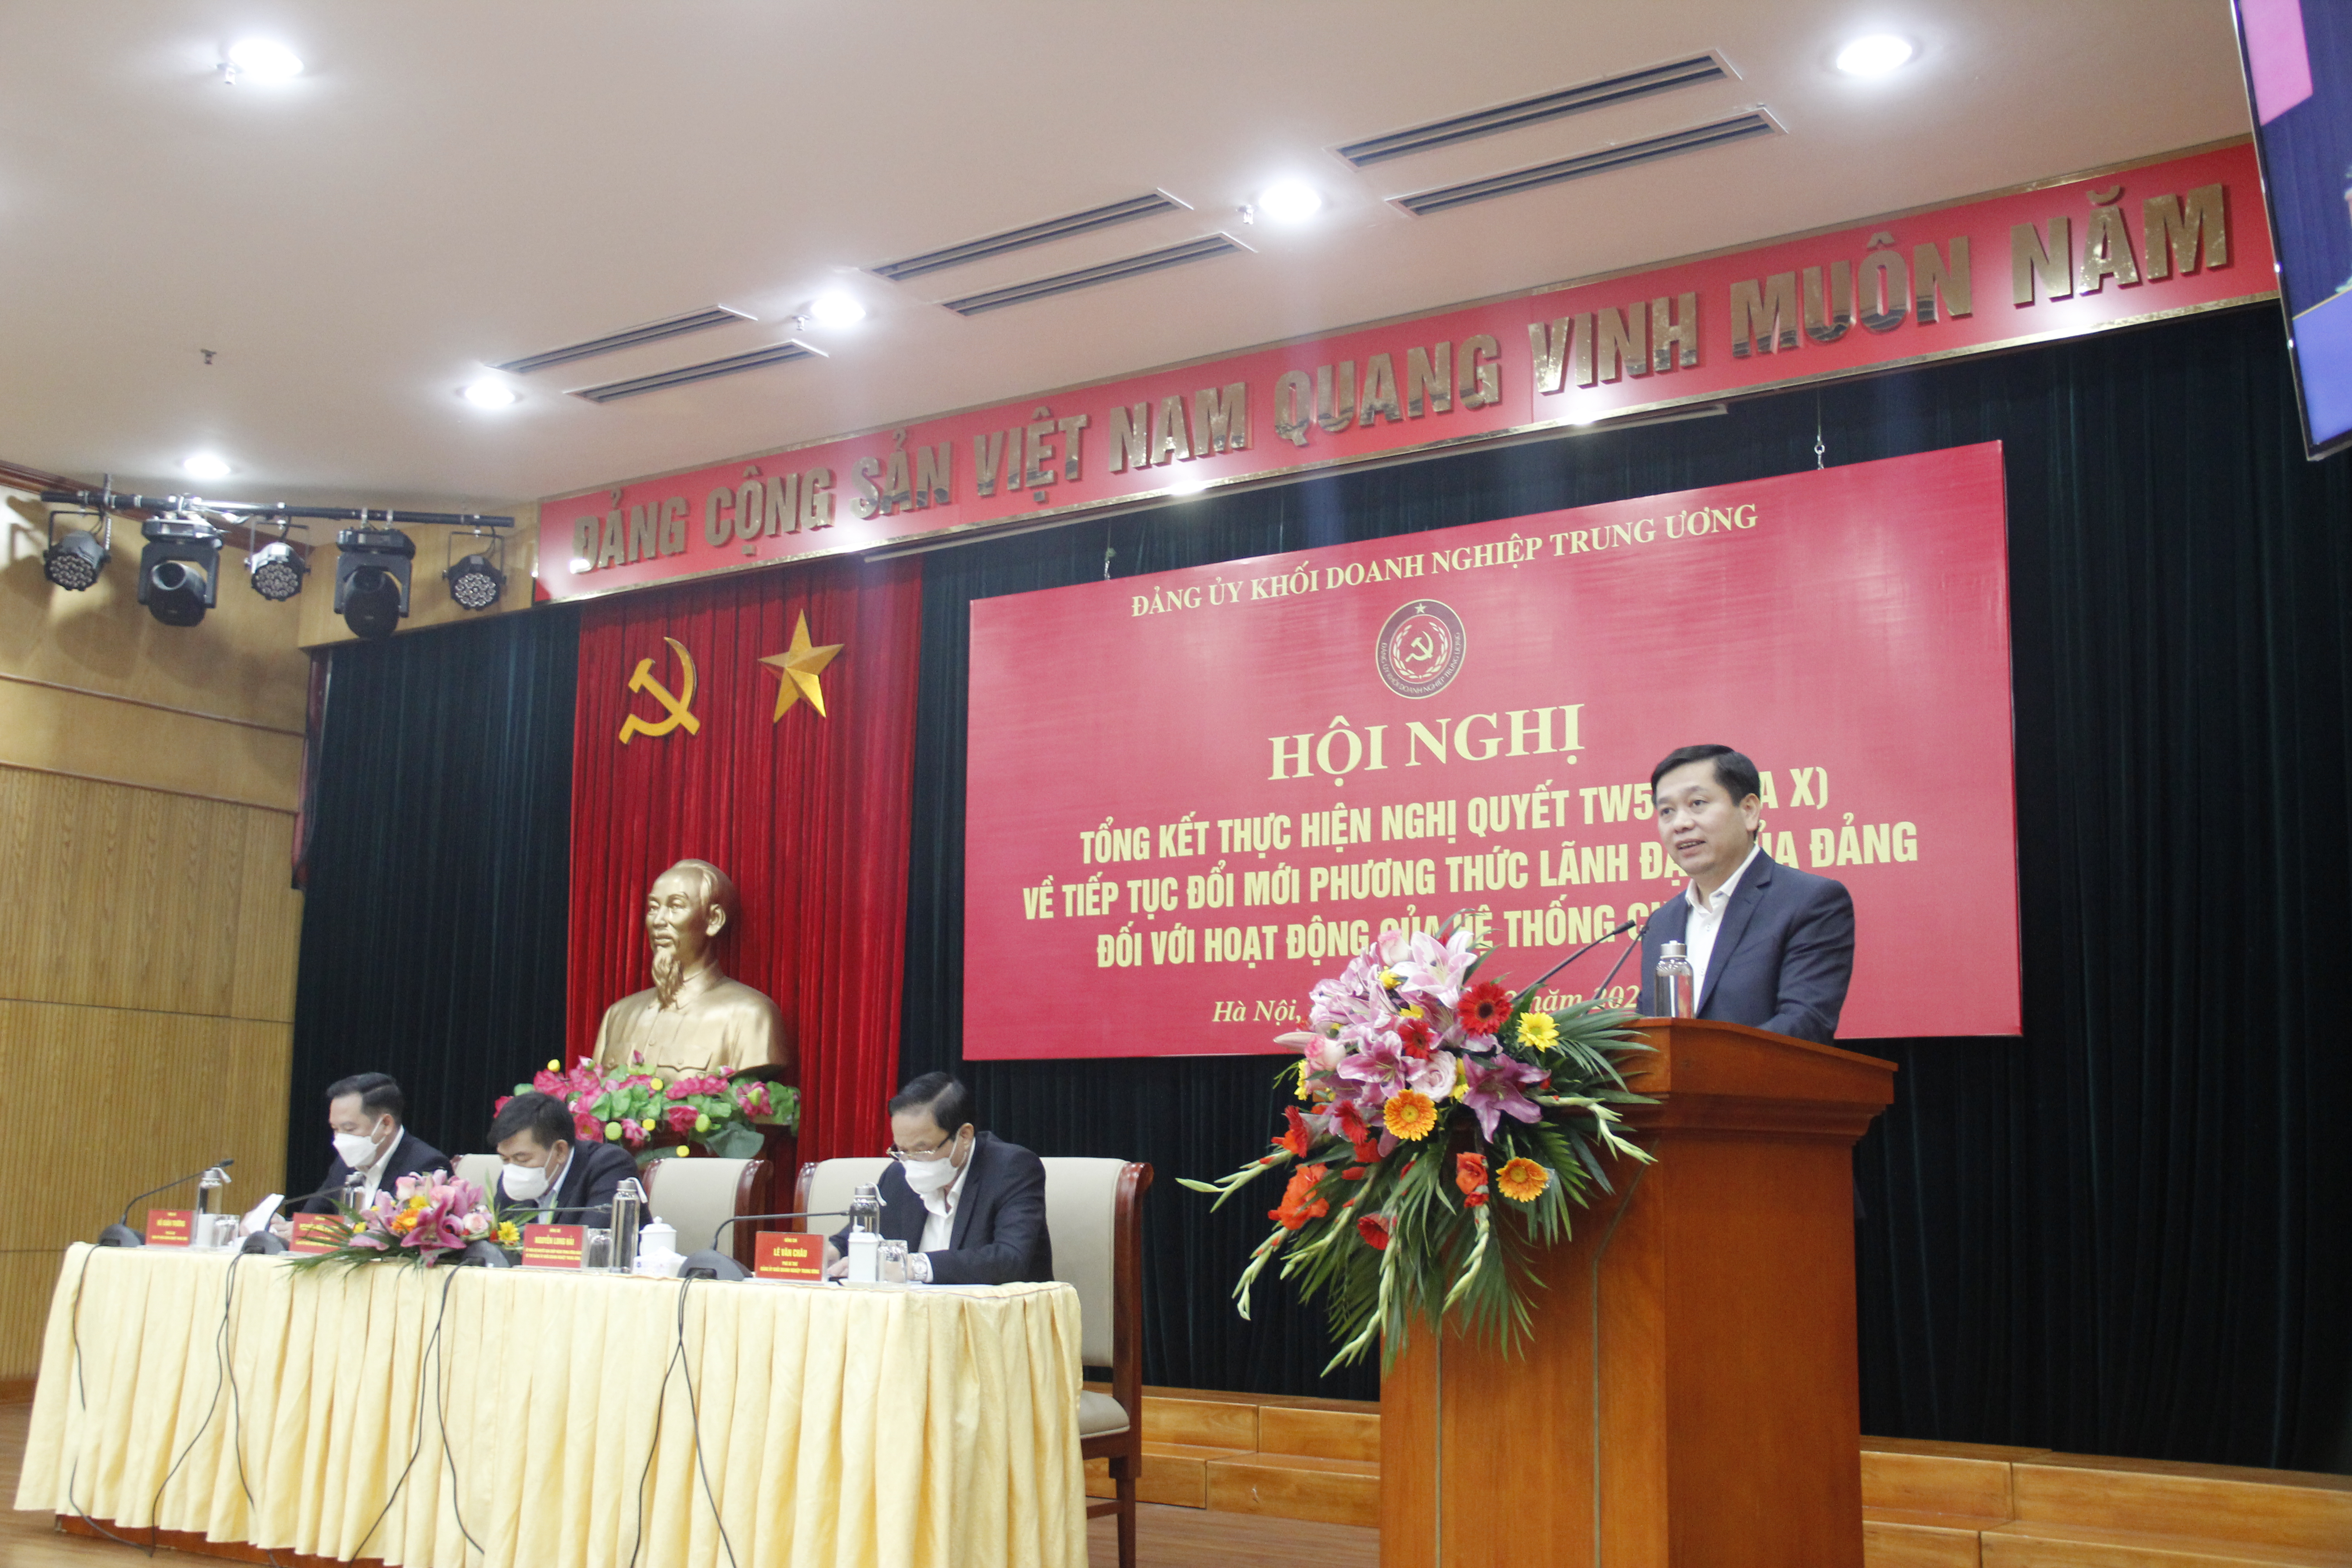 Đồng chí Nguyễn Long Hải, Ủy viên dự khuyết BCH Trung ương Đảng, Bí thư Đảng ủy Khối phát biểu khai mạc Hội nghị.